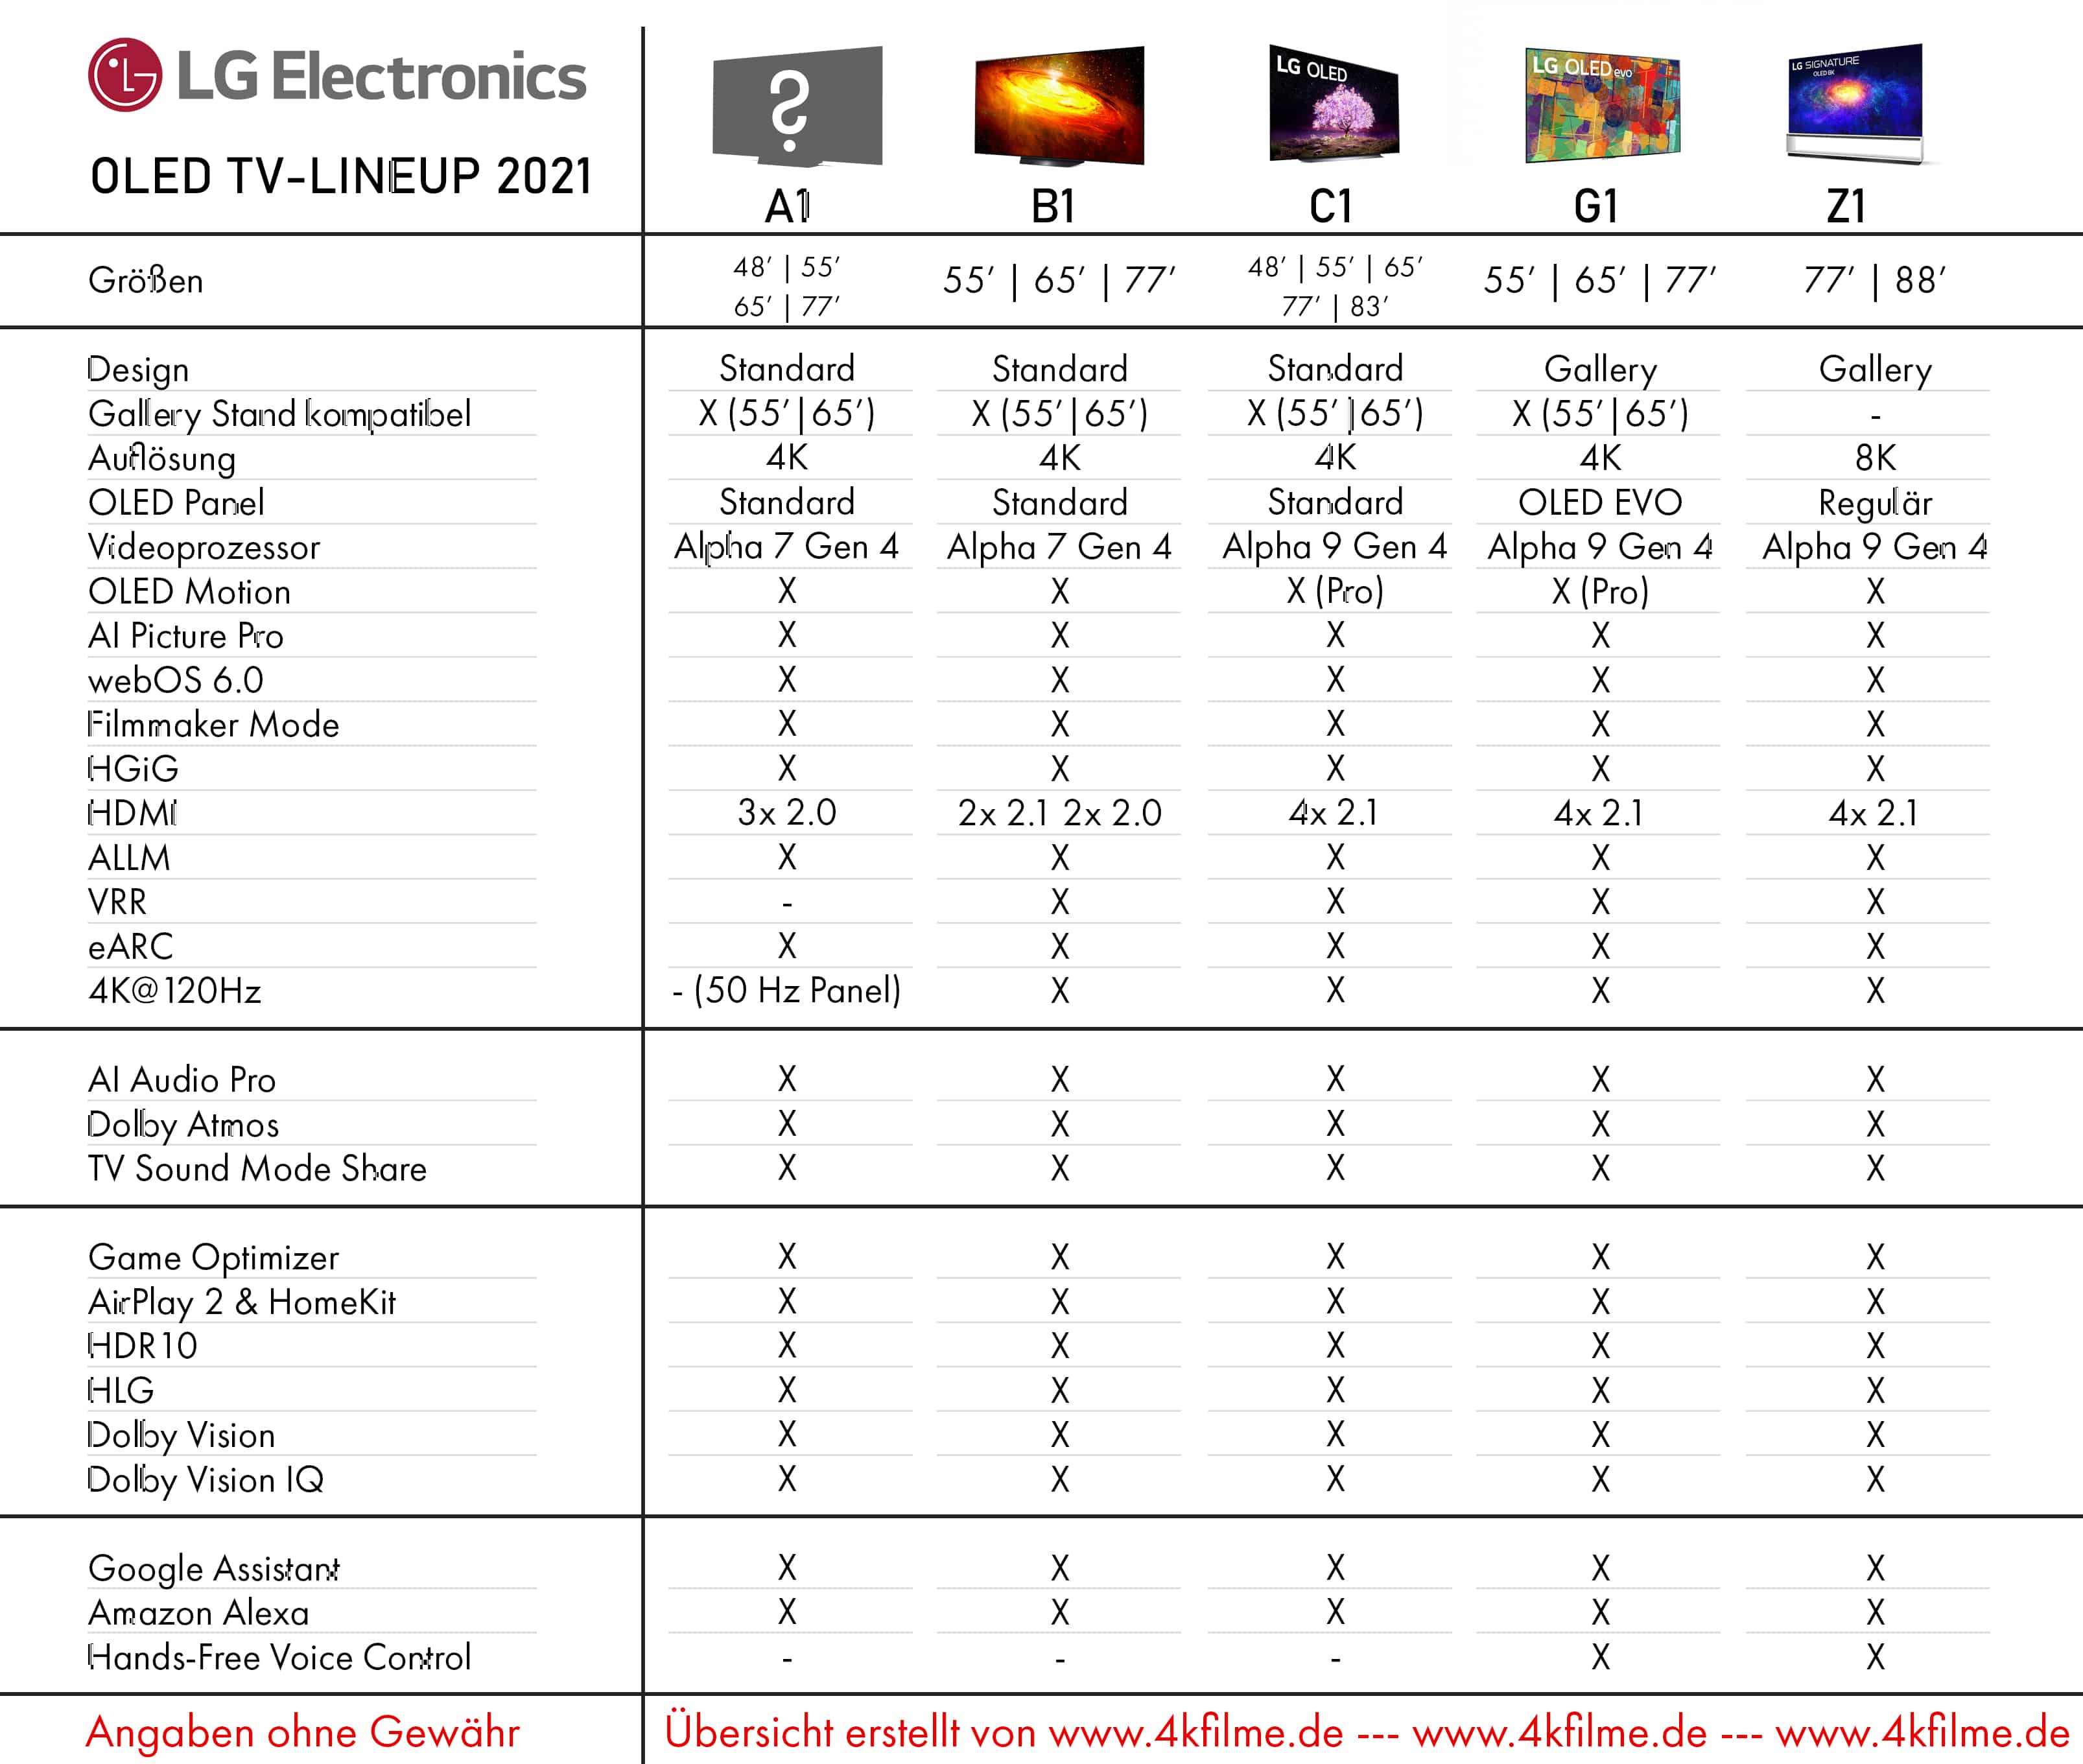 Название телевизоров lg. Таблица телевизоров LG 2021. LG TV 2021. Расшифровка моделей телевизоров LG 2021. Телевизоры LG OLED 2021.